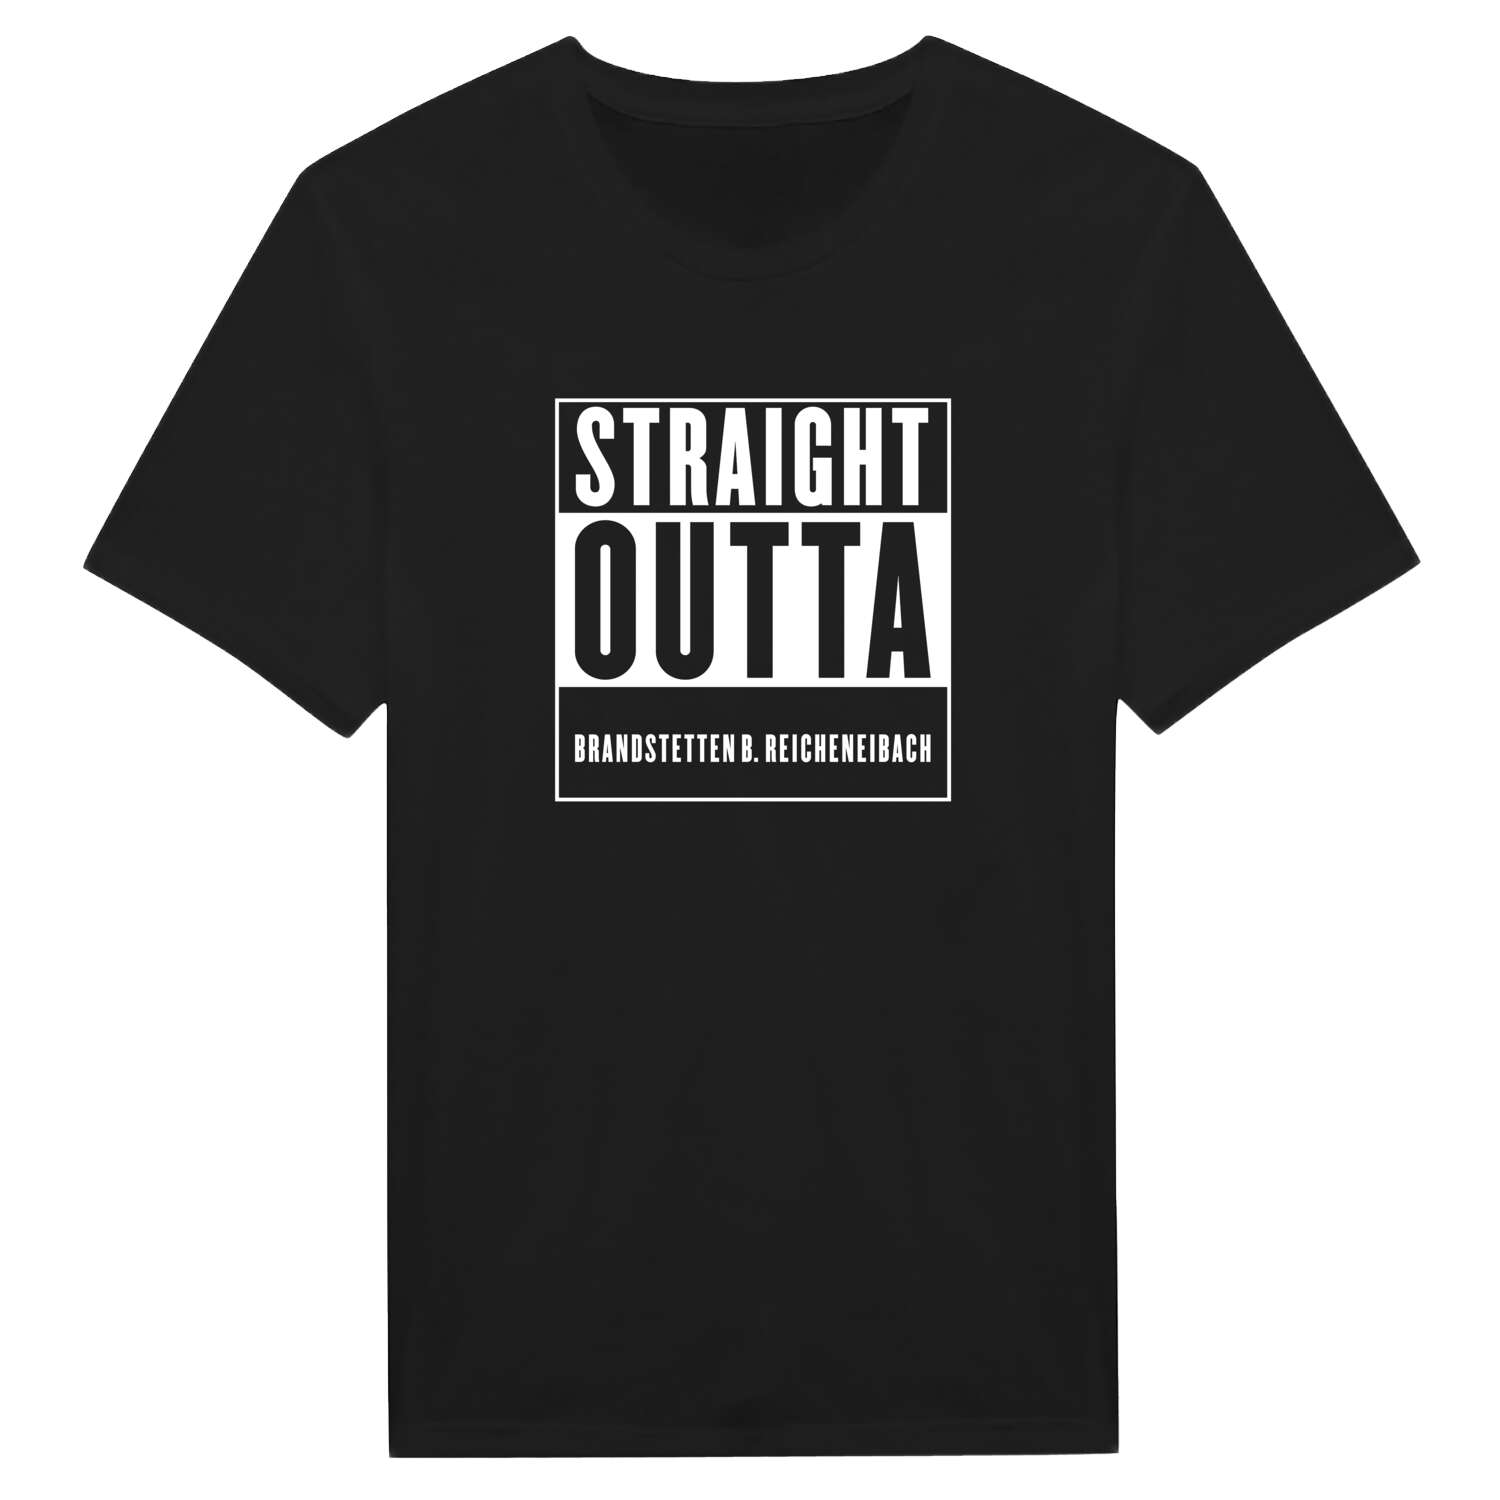 Brandstetten b. Reicheneibach T-Shirt »Straight Outta«